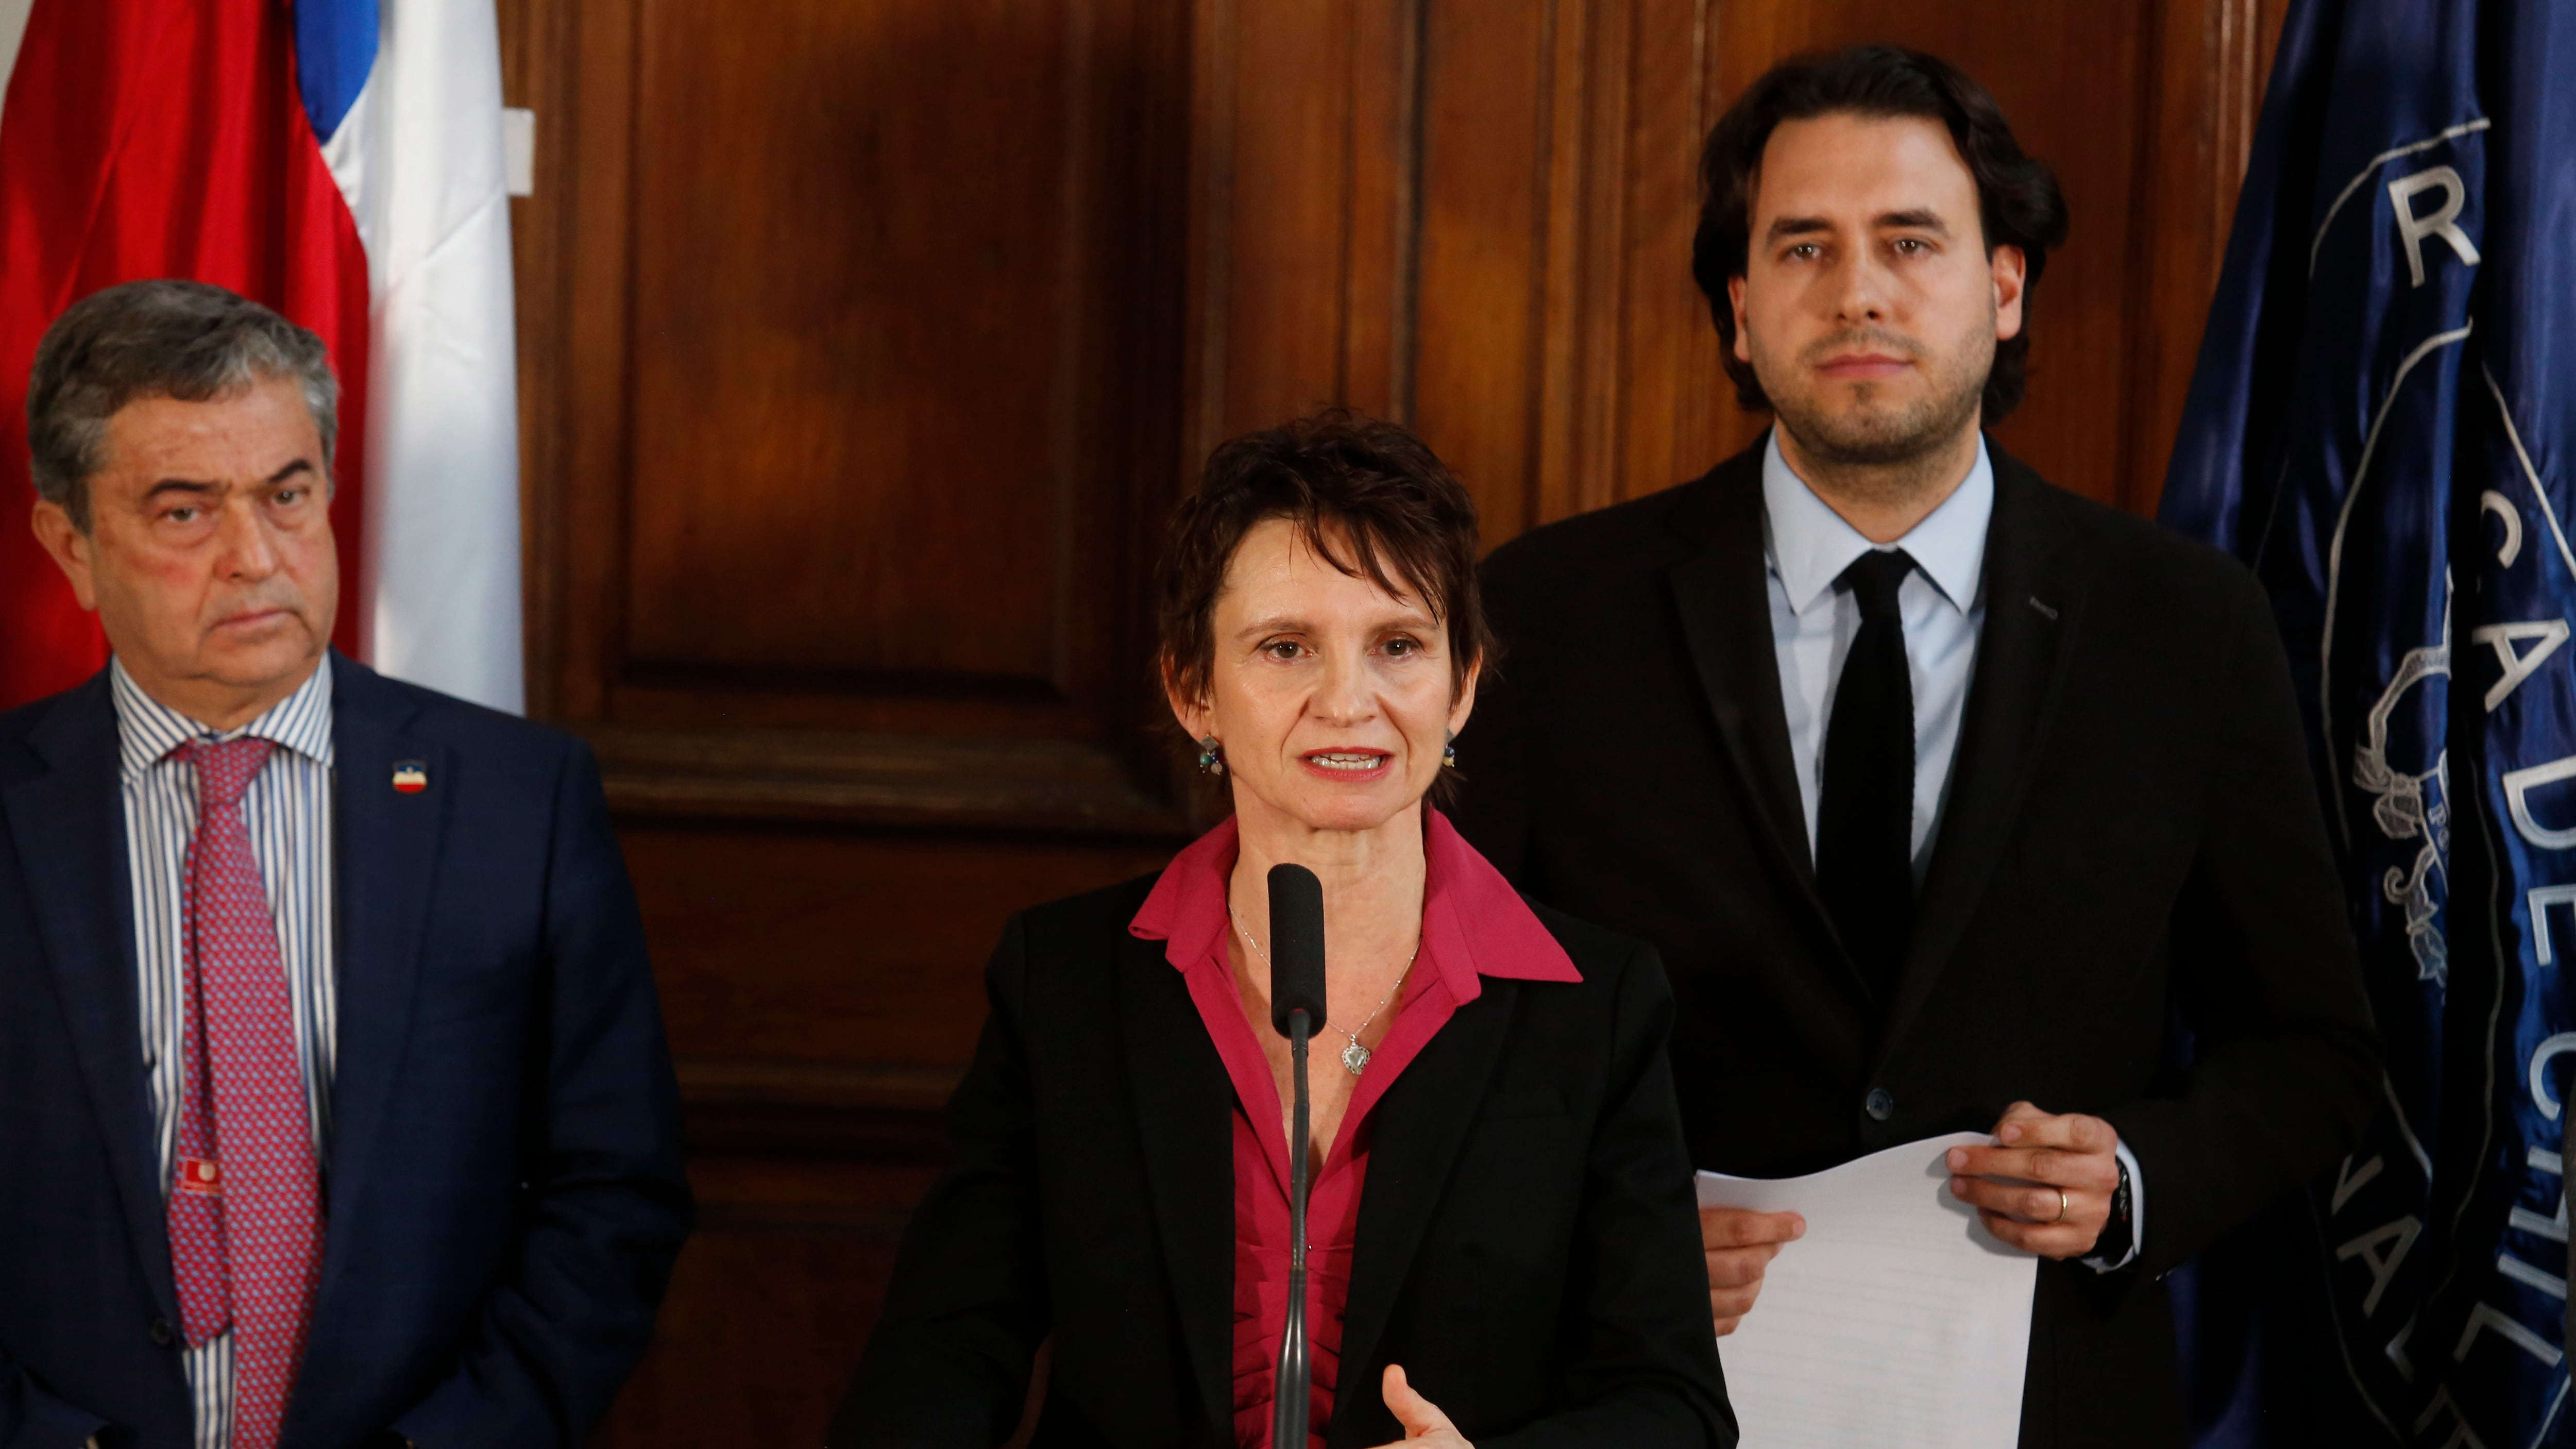 La ministra Tohá ha intentado liderar un acuerdo por seguridad. / Juan Eduardo López/ Aton Chile